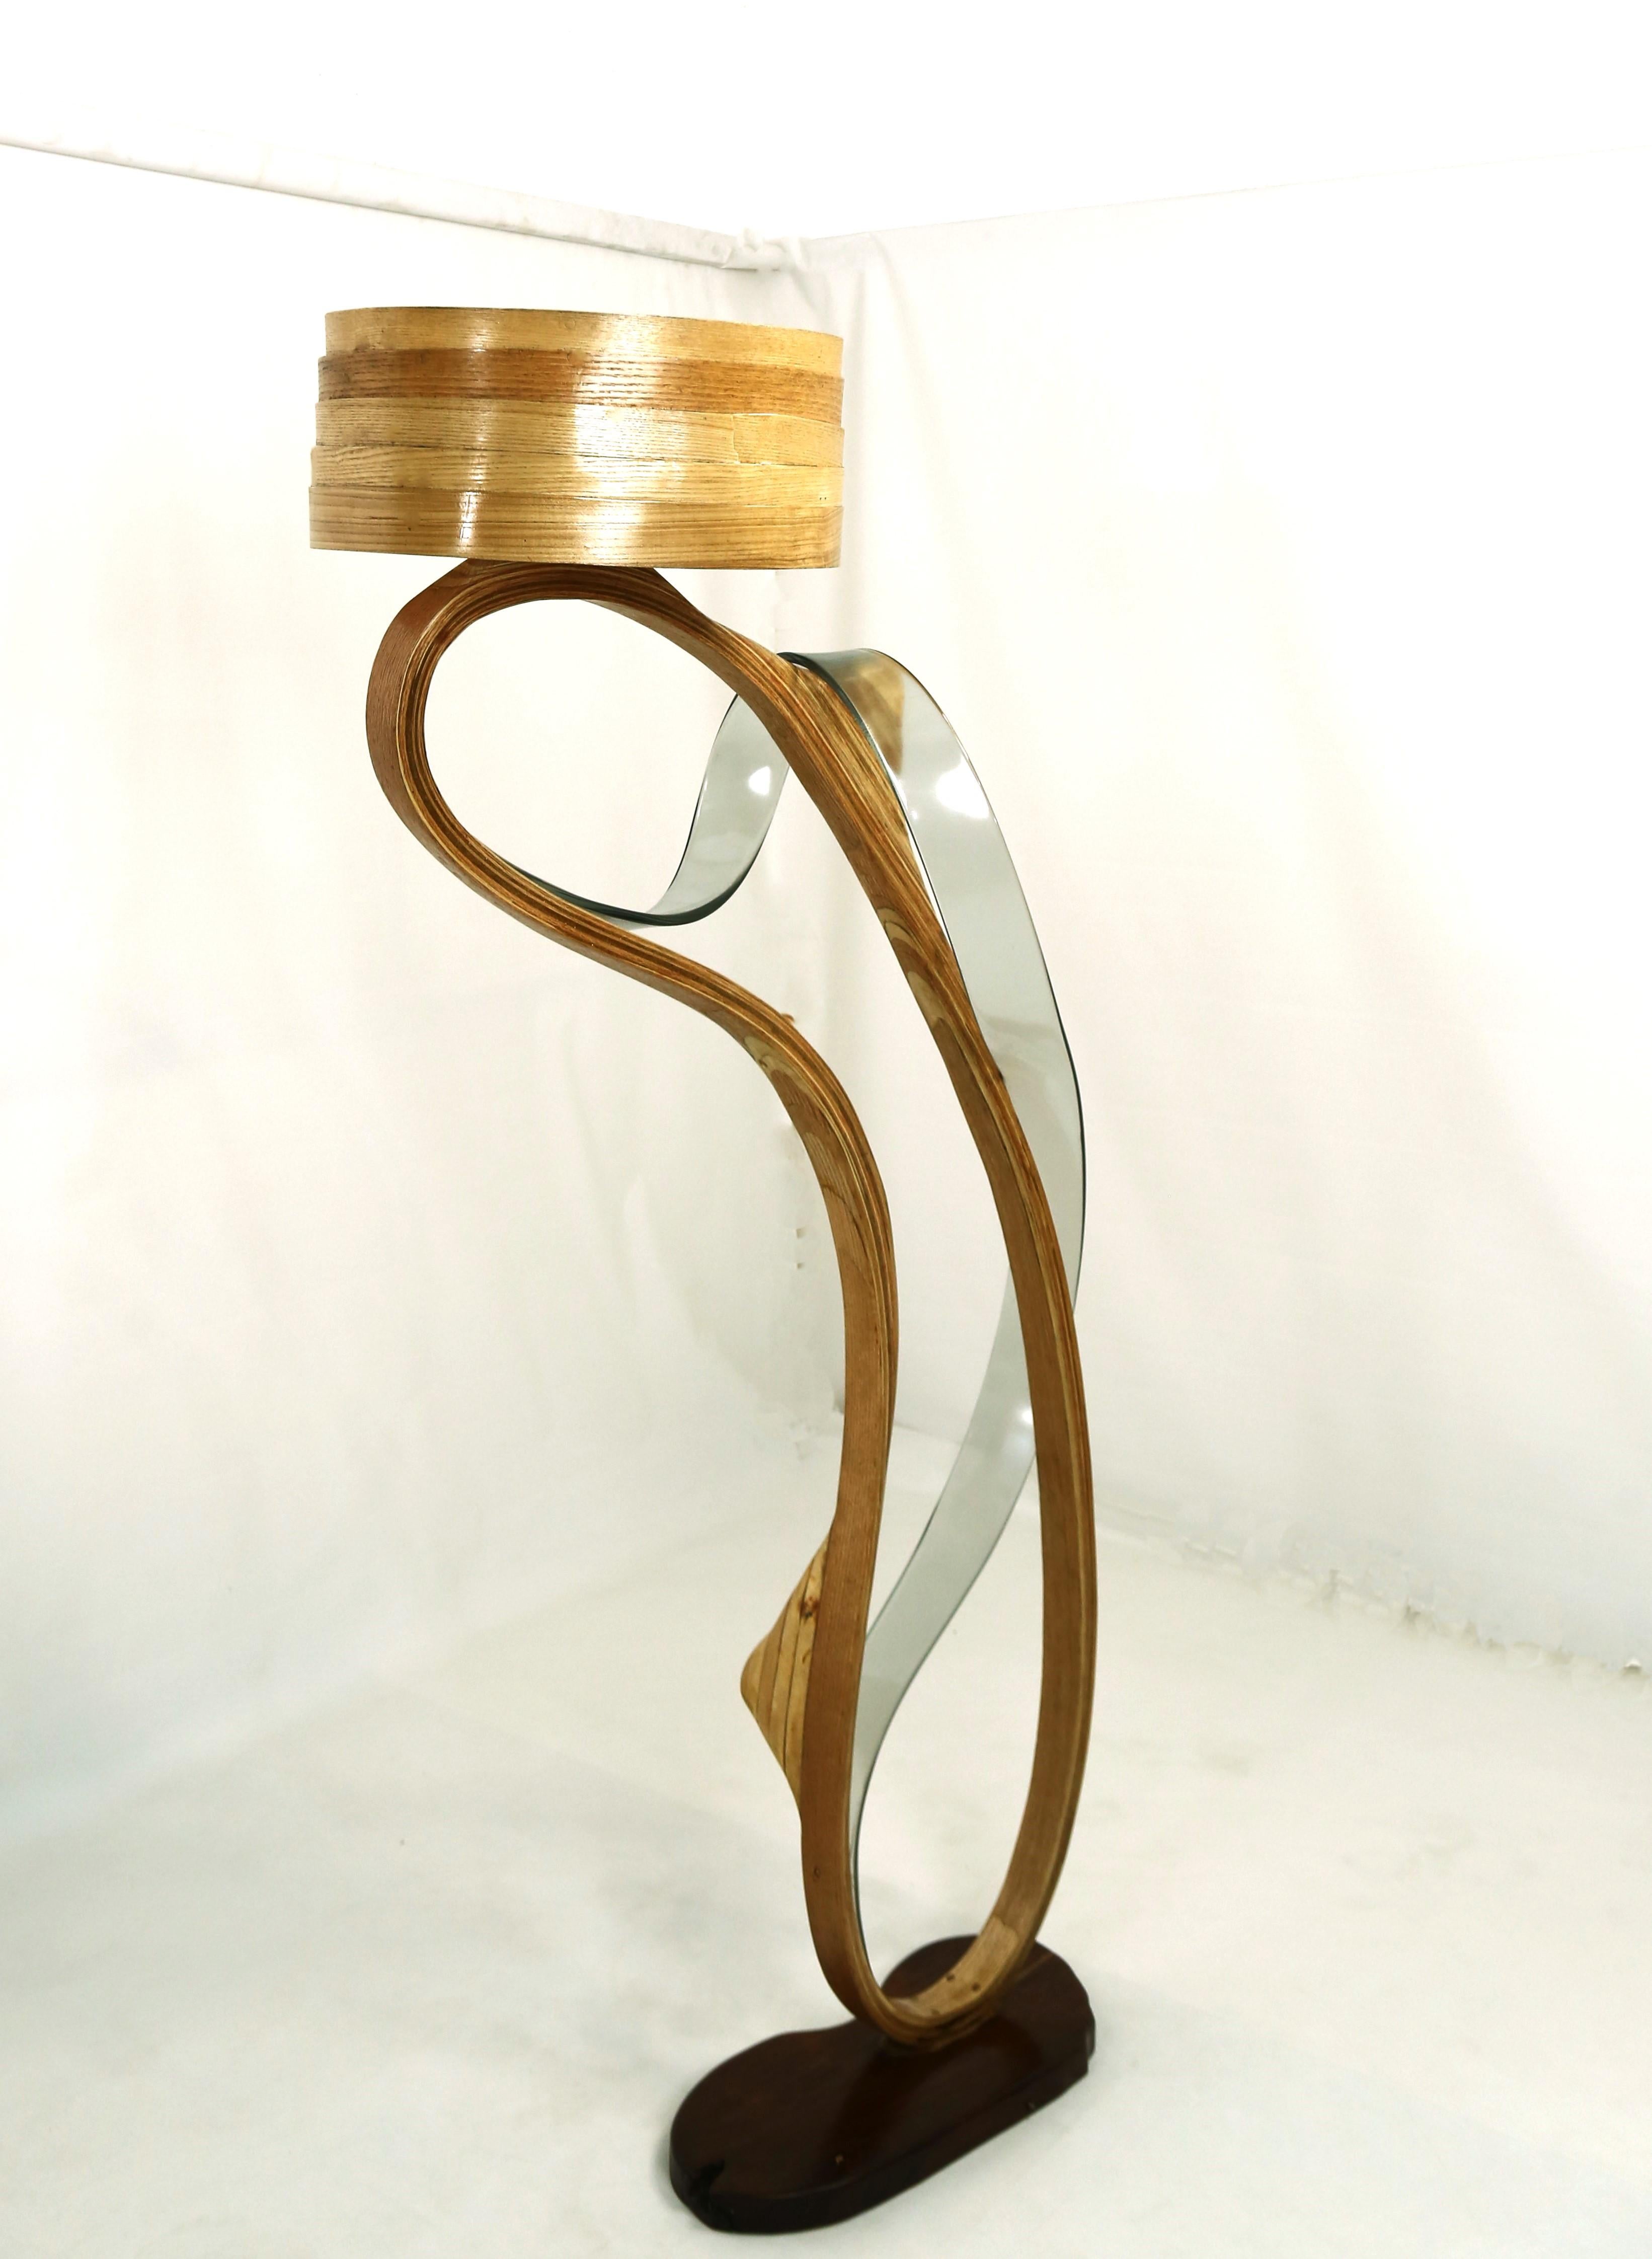 La lampe Fluctus a été fabriquée en bois de frêne avec différentes techniques d'empilage et un design minimal. Une bande transparente de résine grise a été fusionnée avec le bois, qui se développe organiquement et s'enroule autour de la pièce,